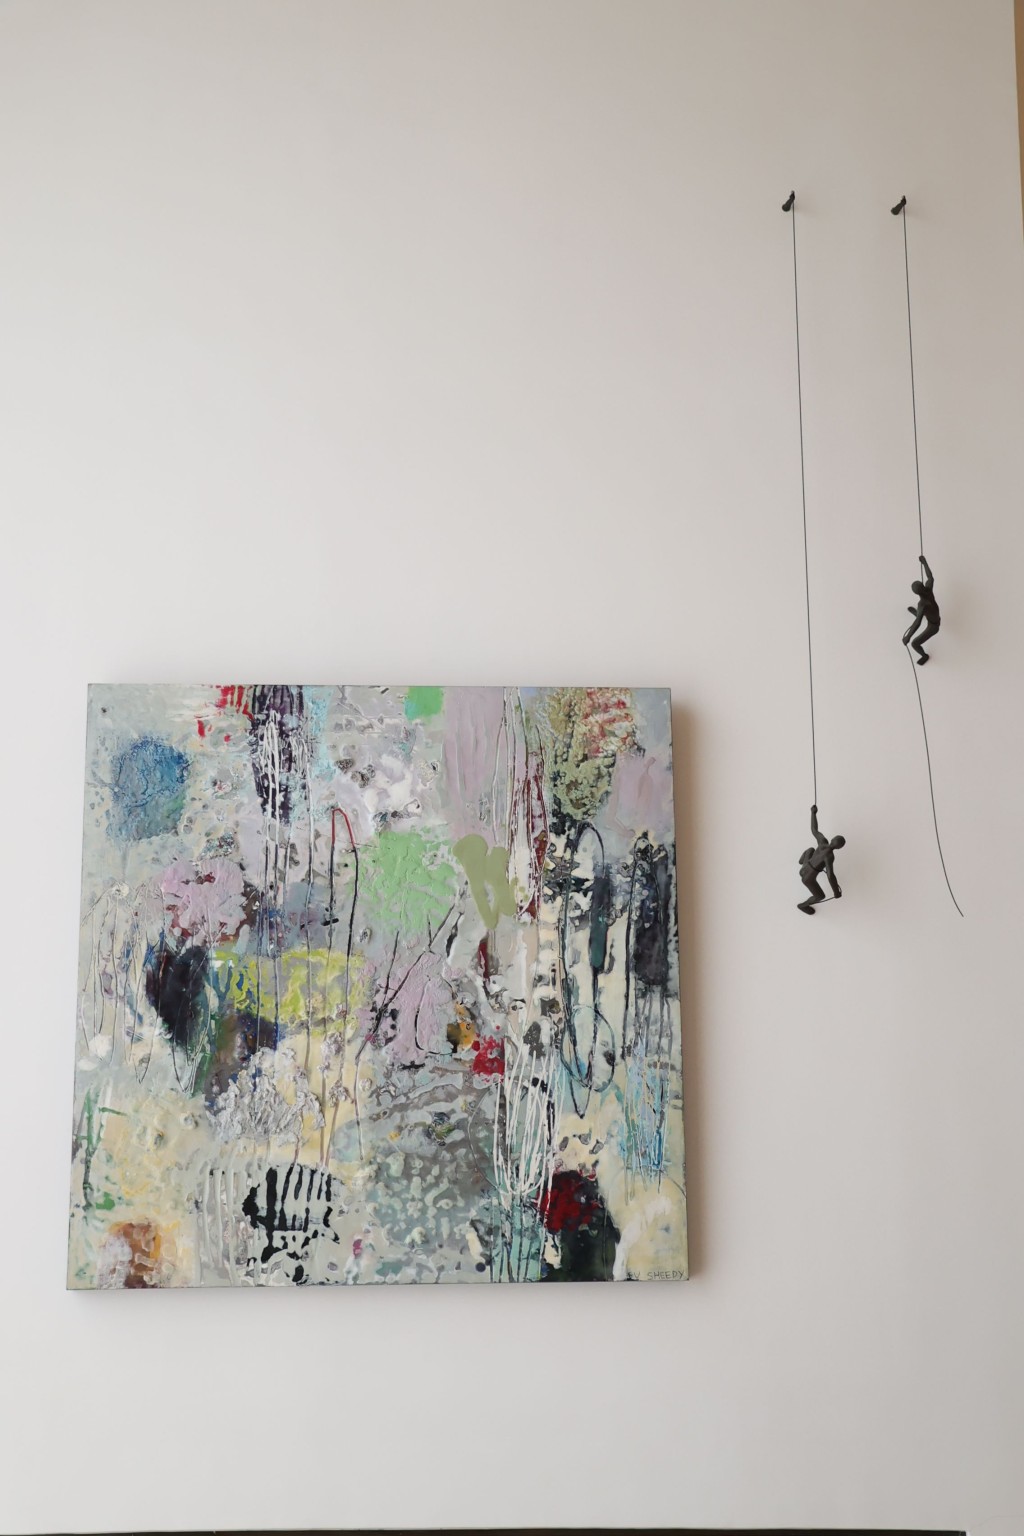 加拿大画家Su Sheedy的抽象画作旁边，挂了两个向上爬的公仔，寓意永远向前。